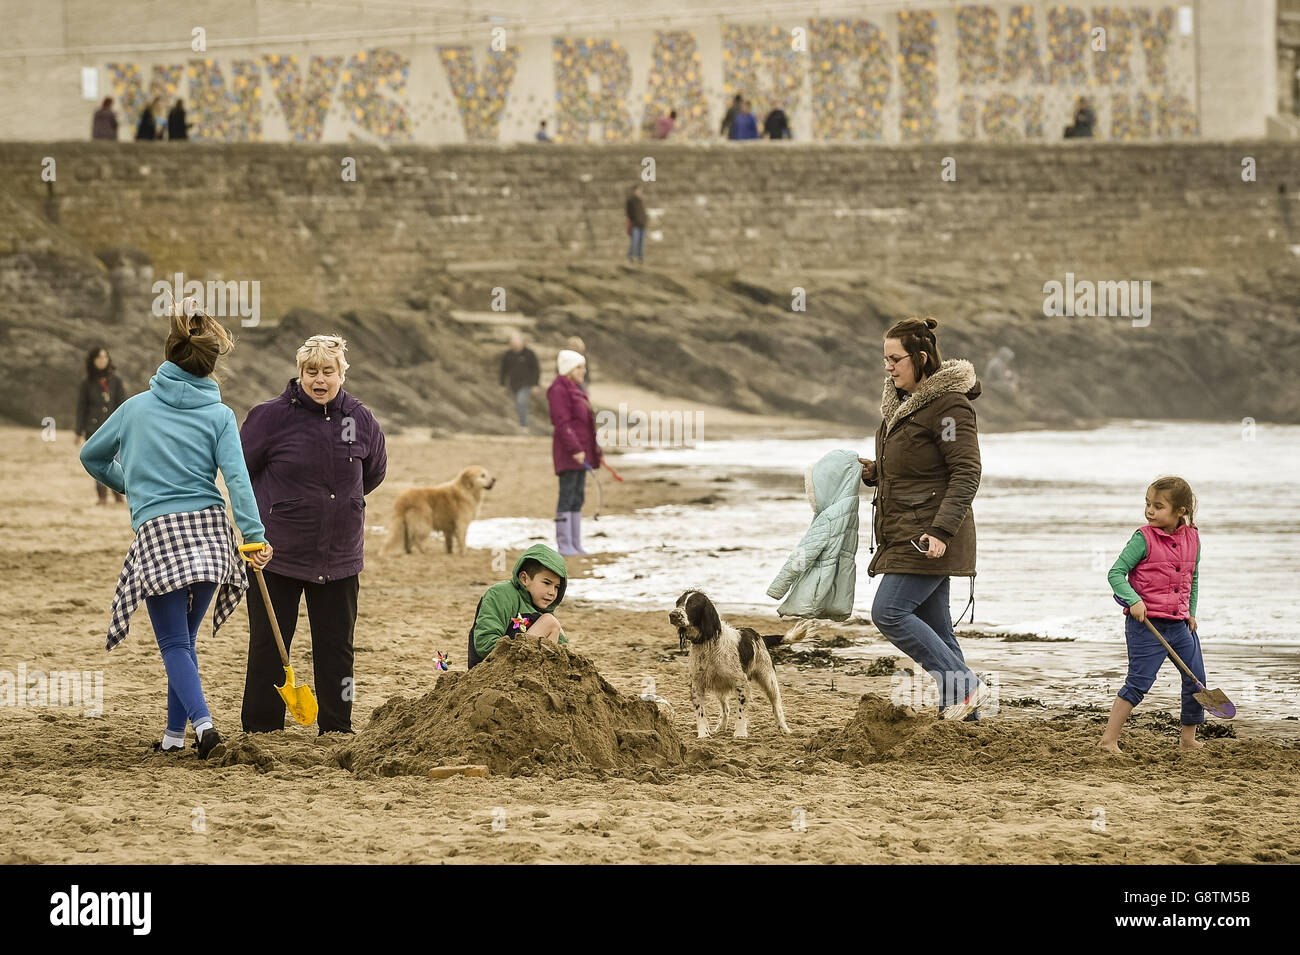 Die Leute spielen am Strand von Barry Island, Wales, wo das Wetter bedeckt und trüb ist. Stockfoto